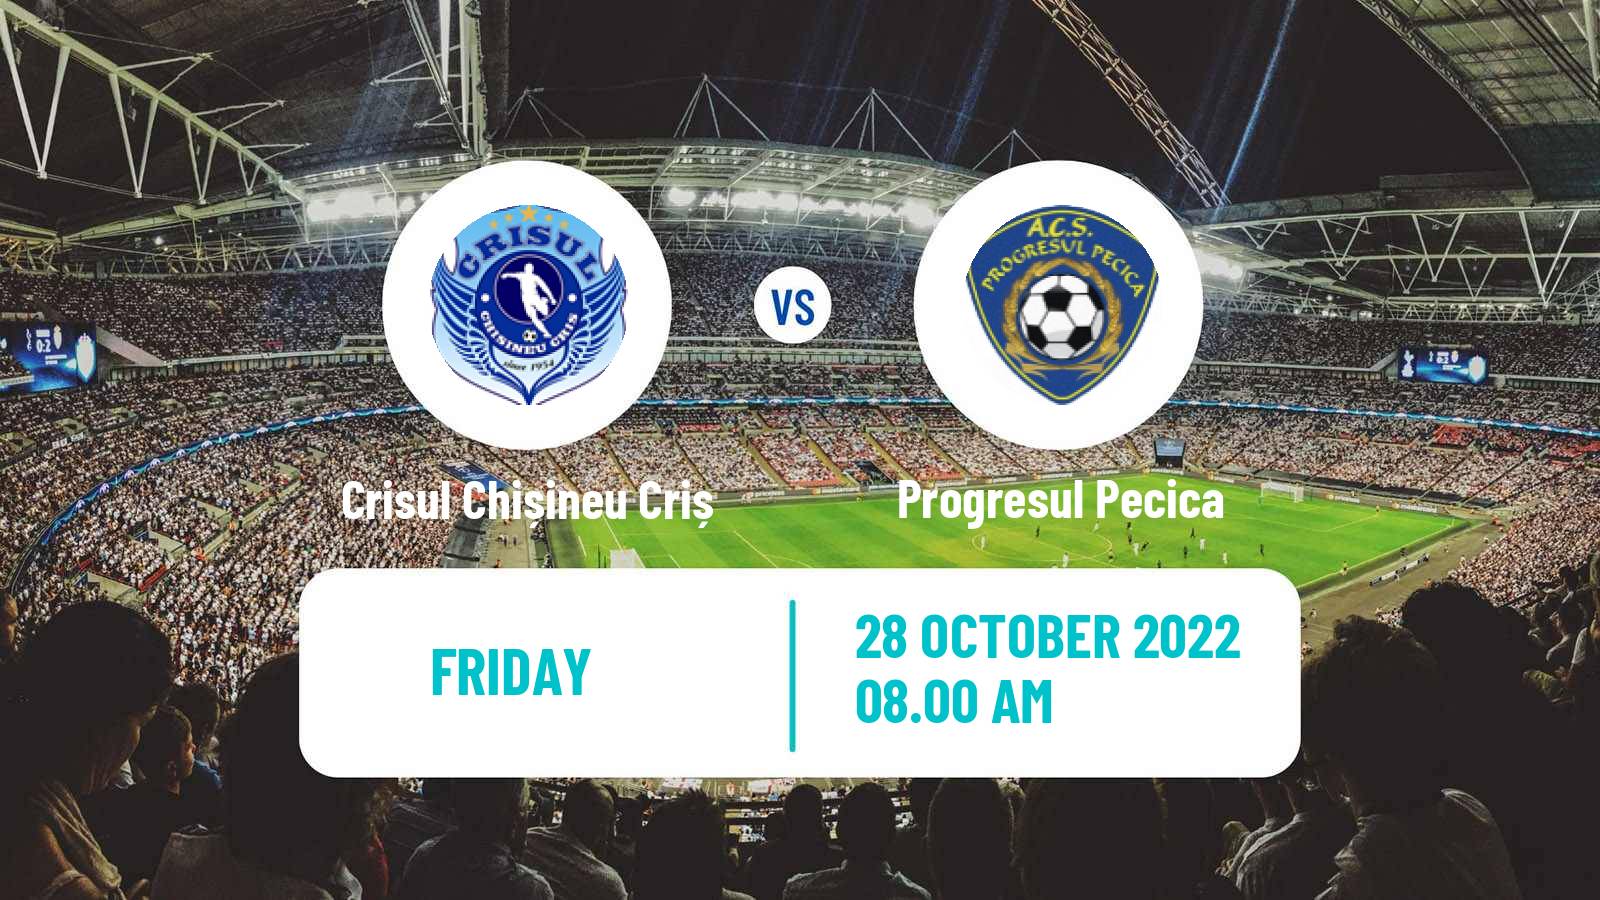 Soccer Romanian Liga 3 - Seria 8 Crisul Chișineu Criș - Progresul Pecica